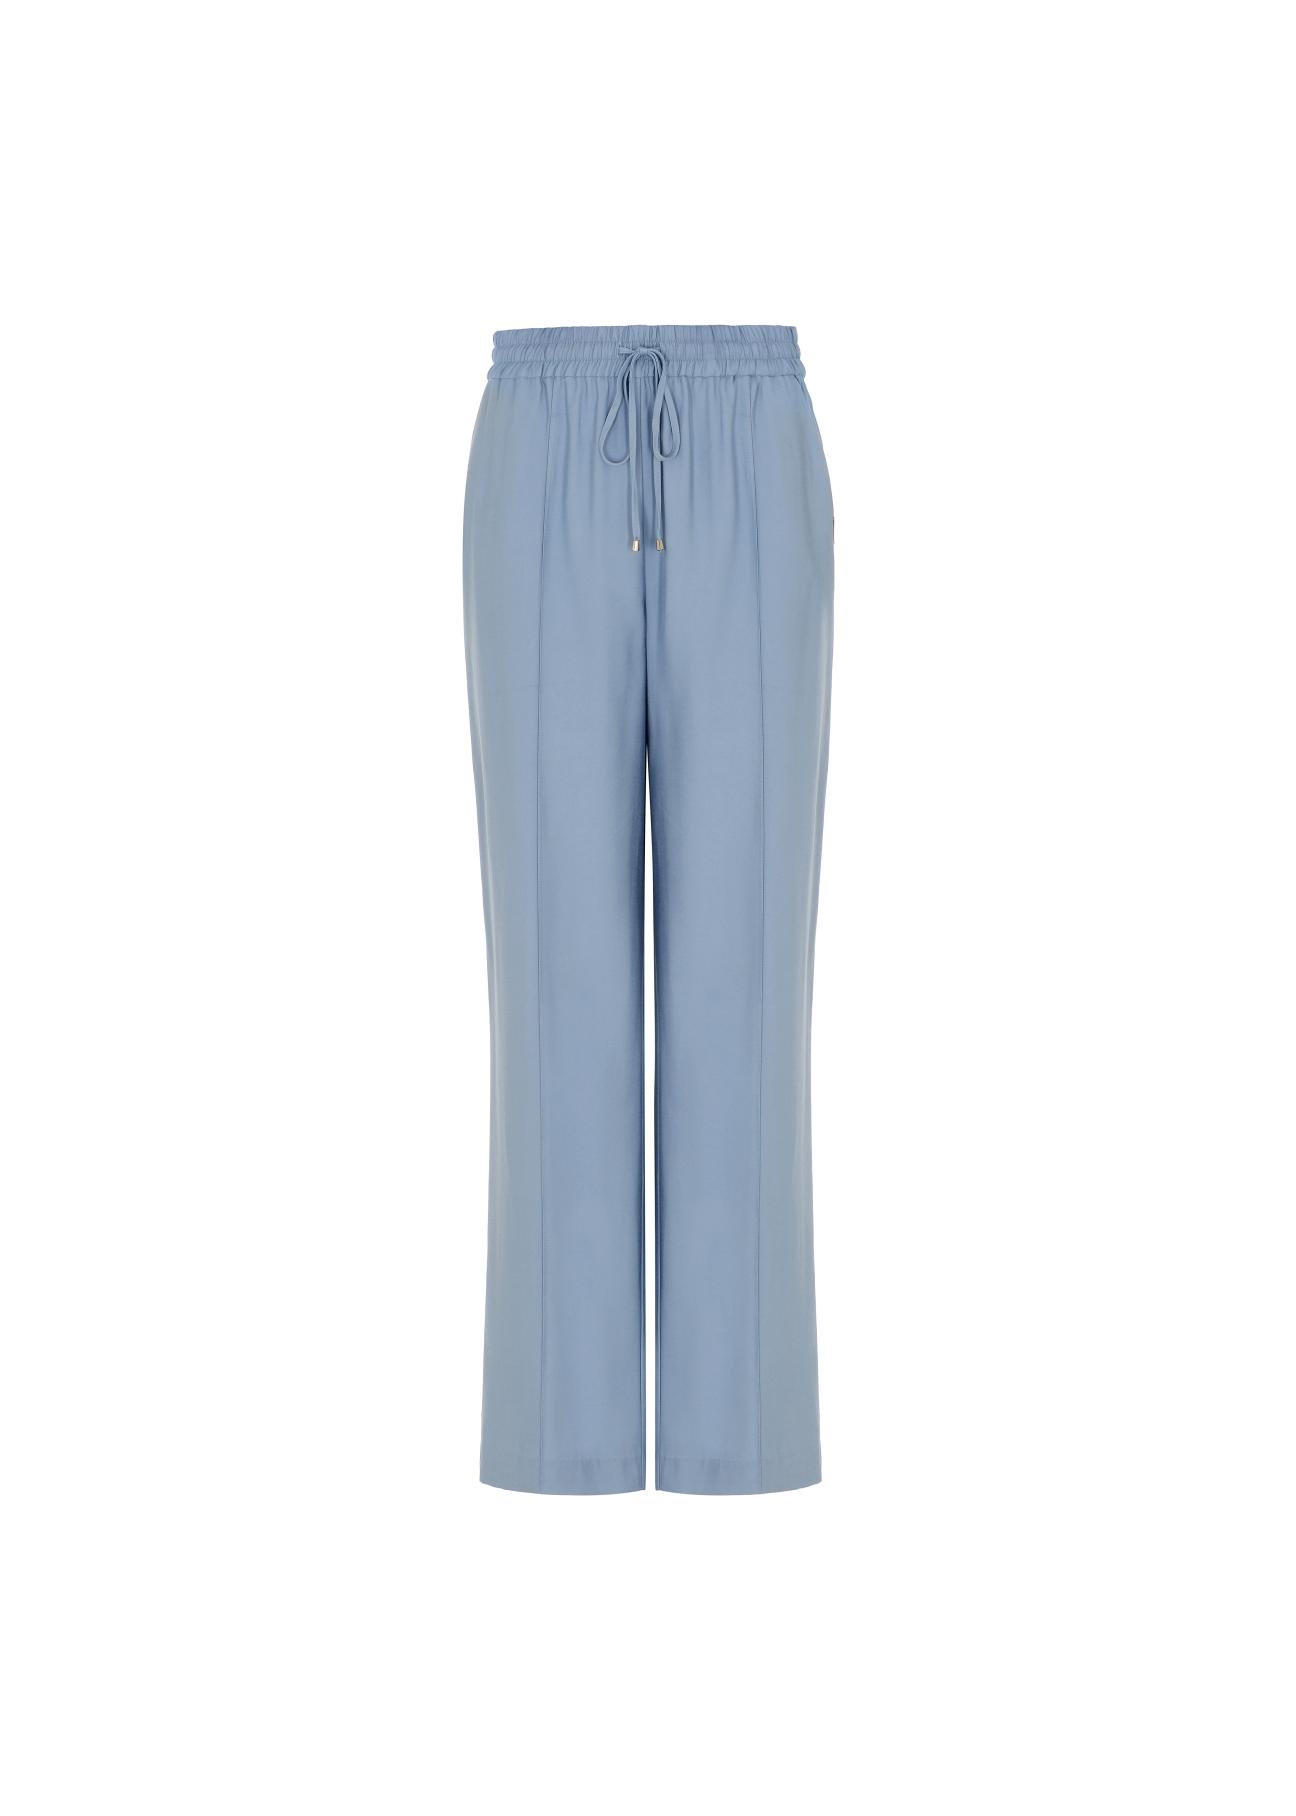 Błękitne szerokie spodnie dresowe damskie SPODT-0068-62(W22)